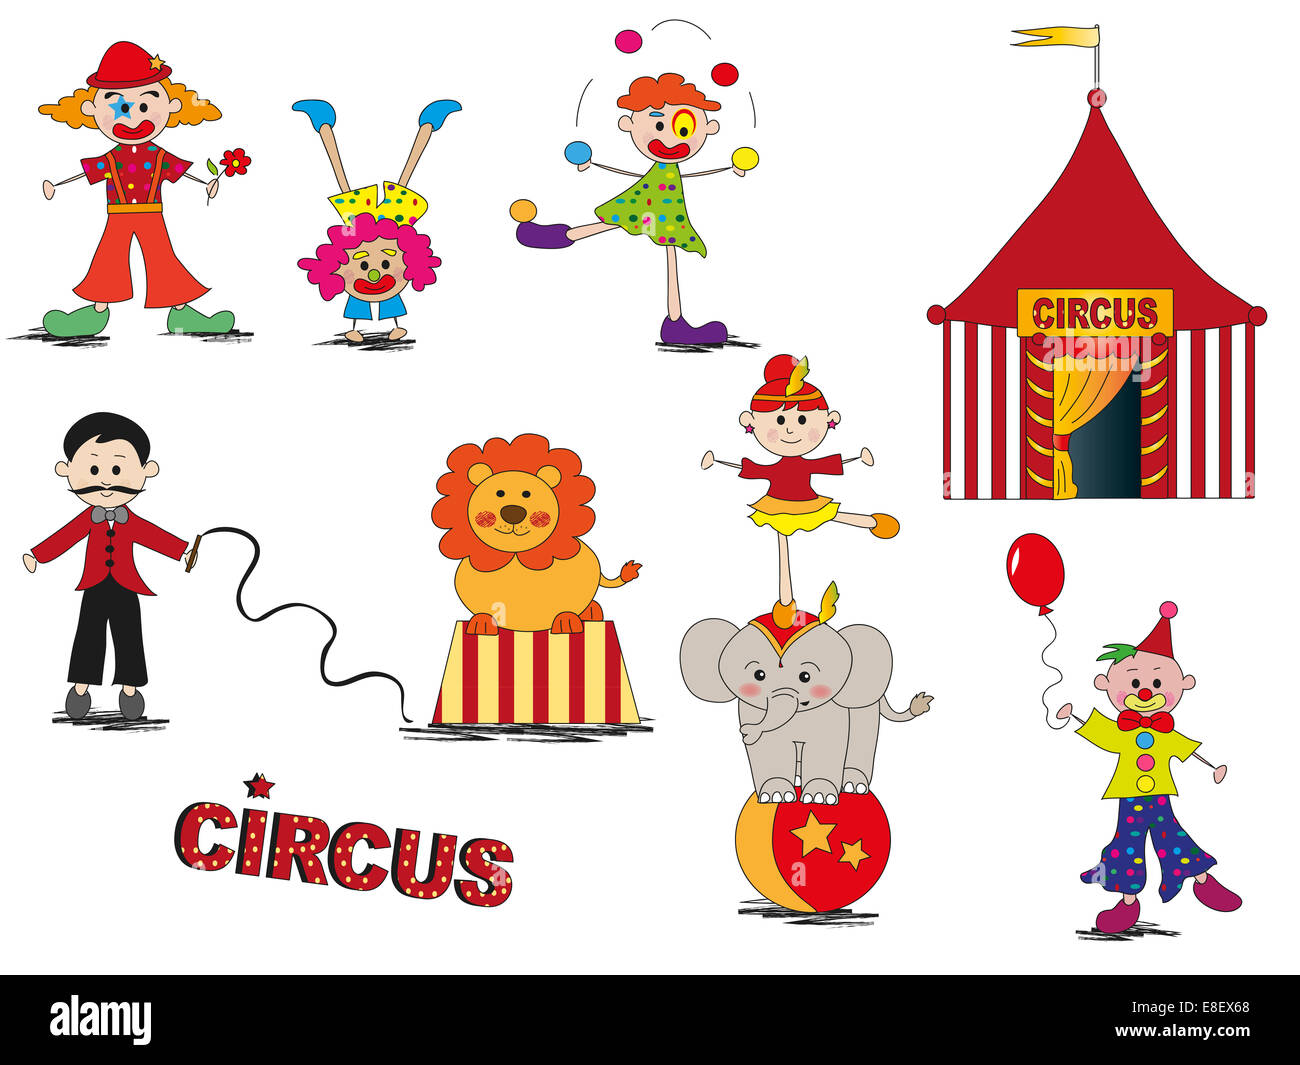 Слово цирк на английском. Цирк мультяшный. Рисунок на тему цирк. Цирк Картун. Афиша цирка в мультяшном стиле.